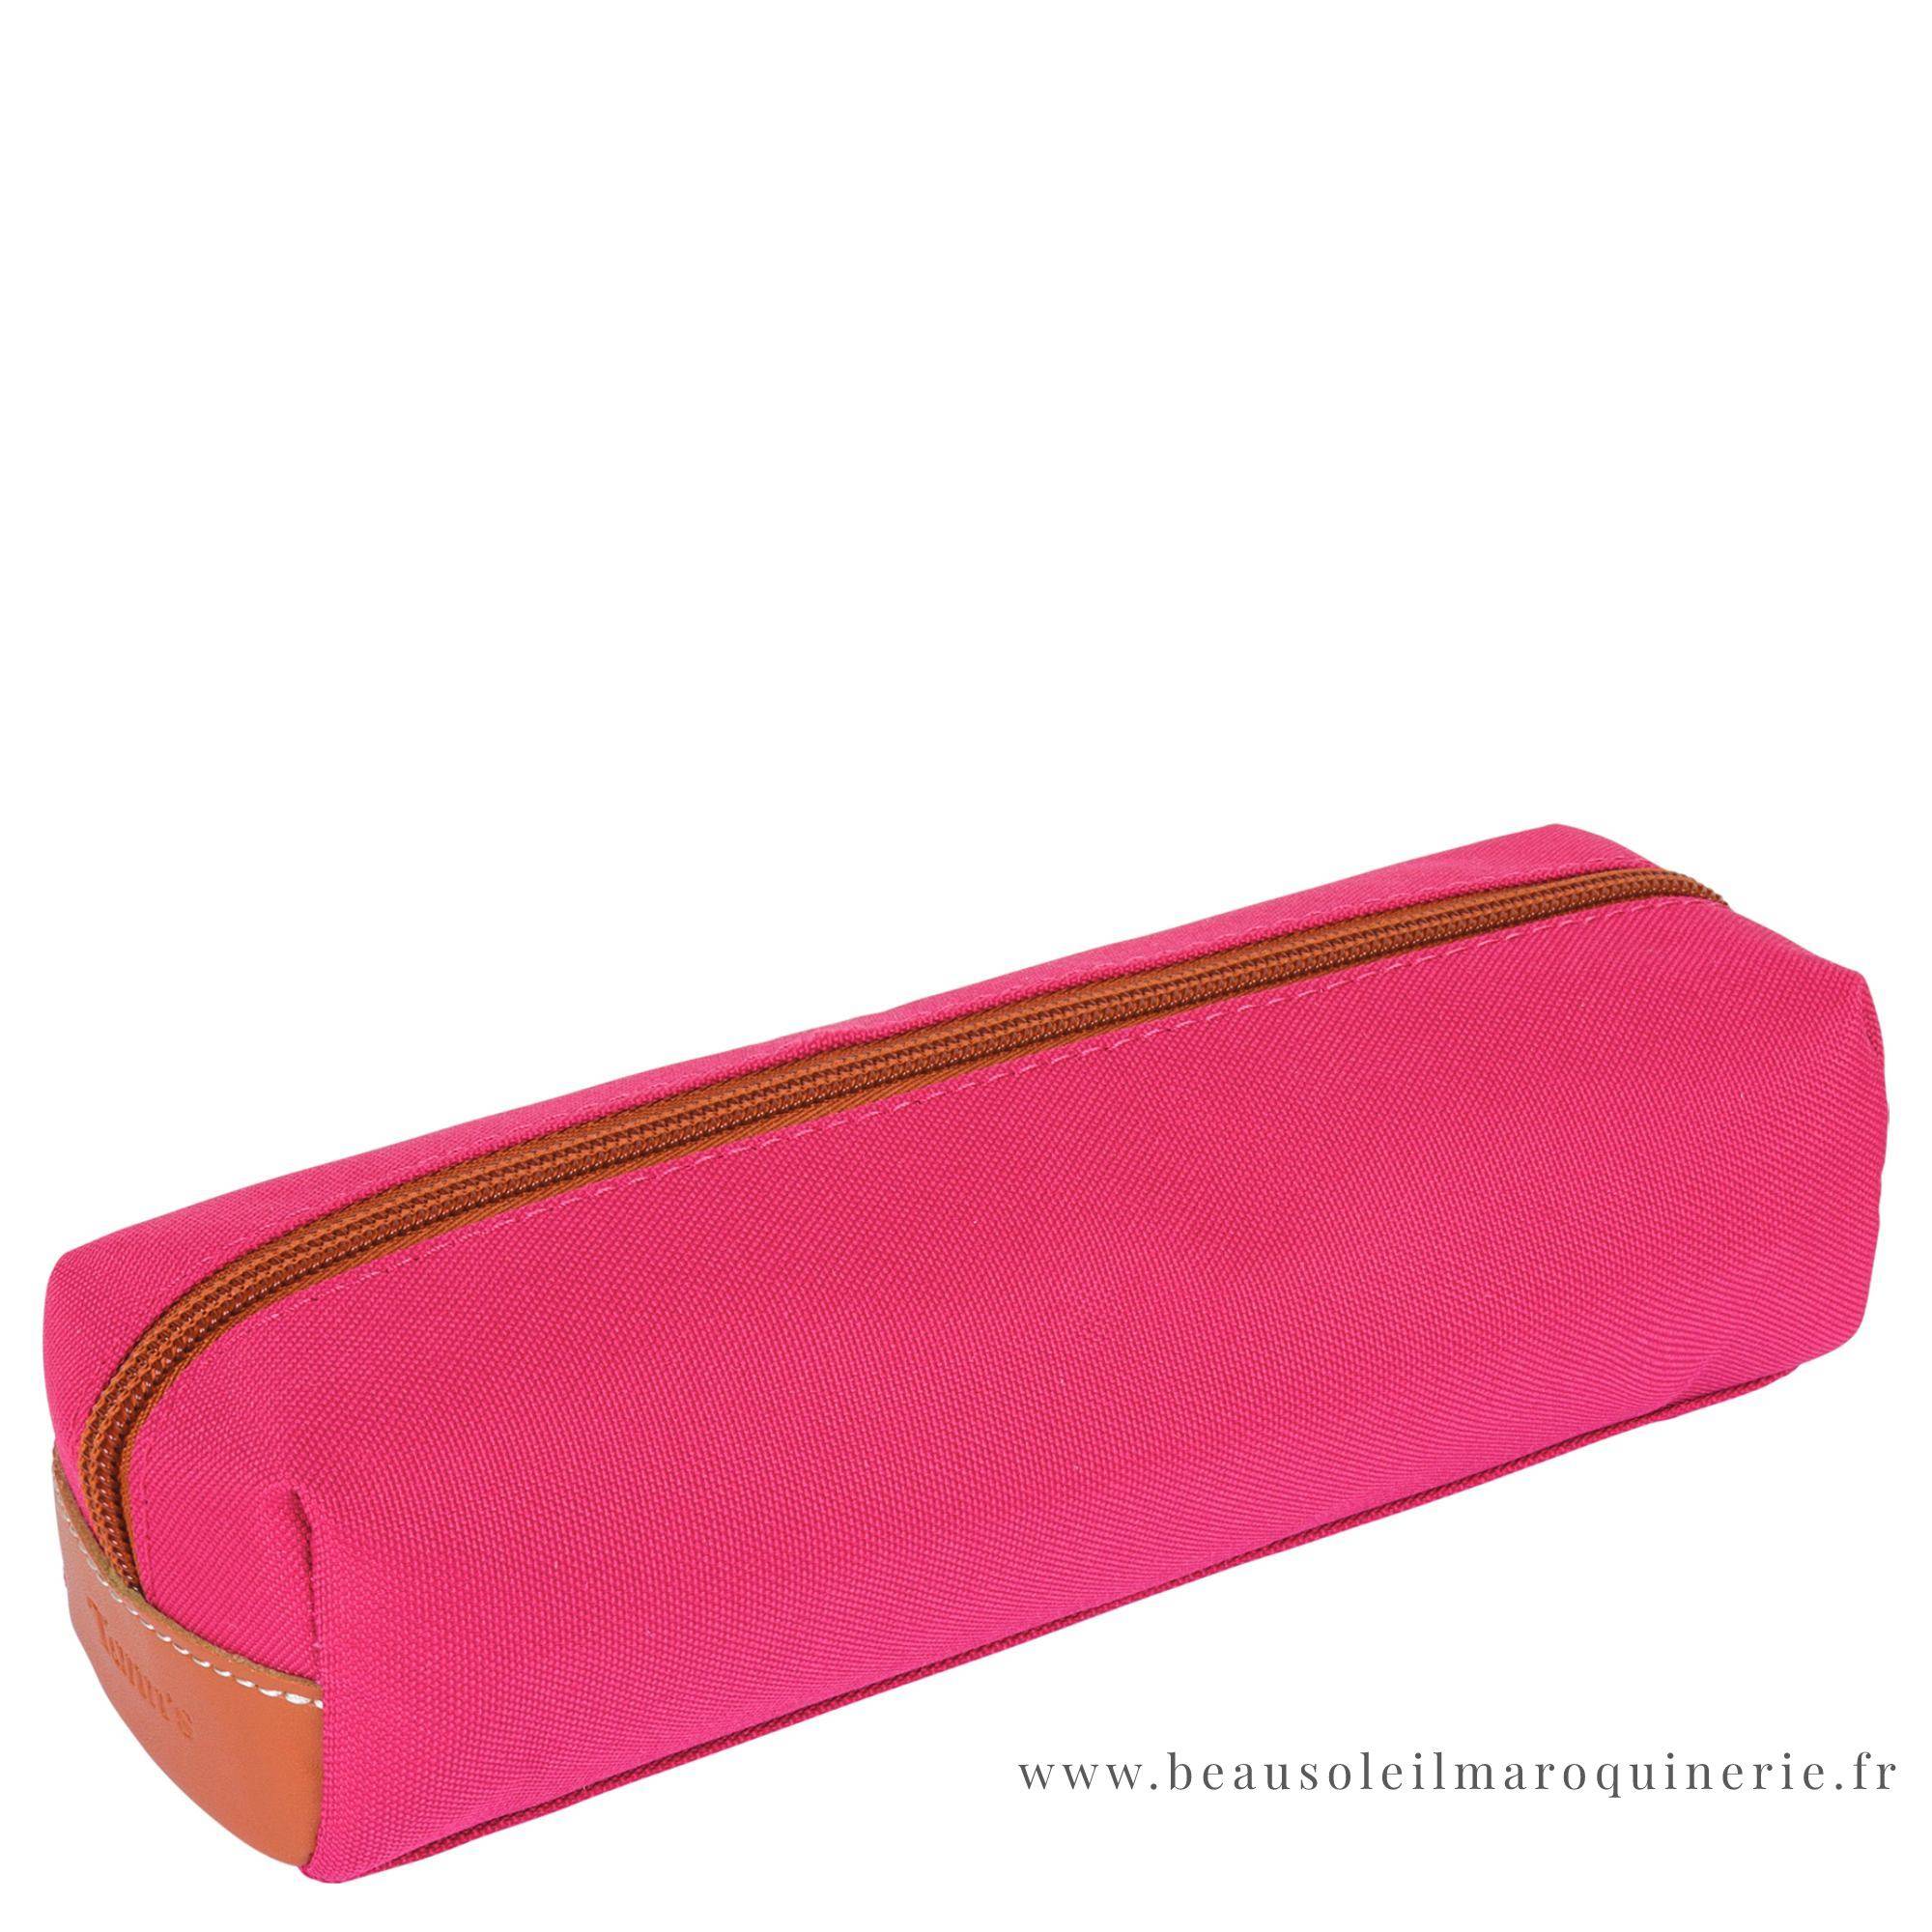 Trousse simple Tann's zippée Paloma 11113 couleur rose vue de dos